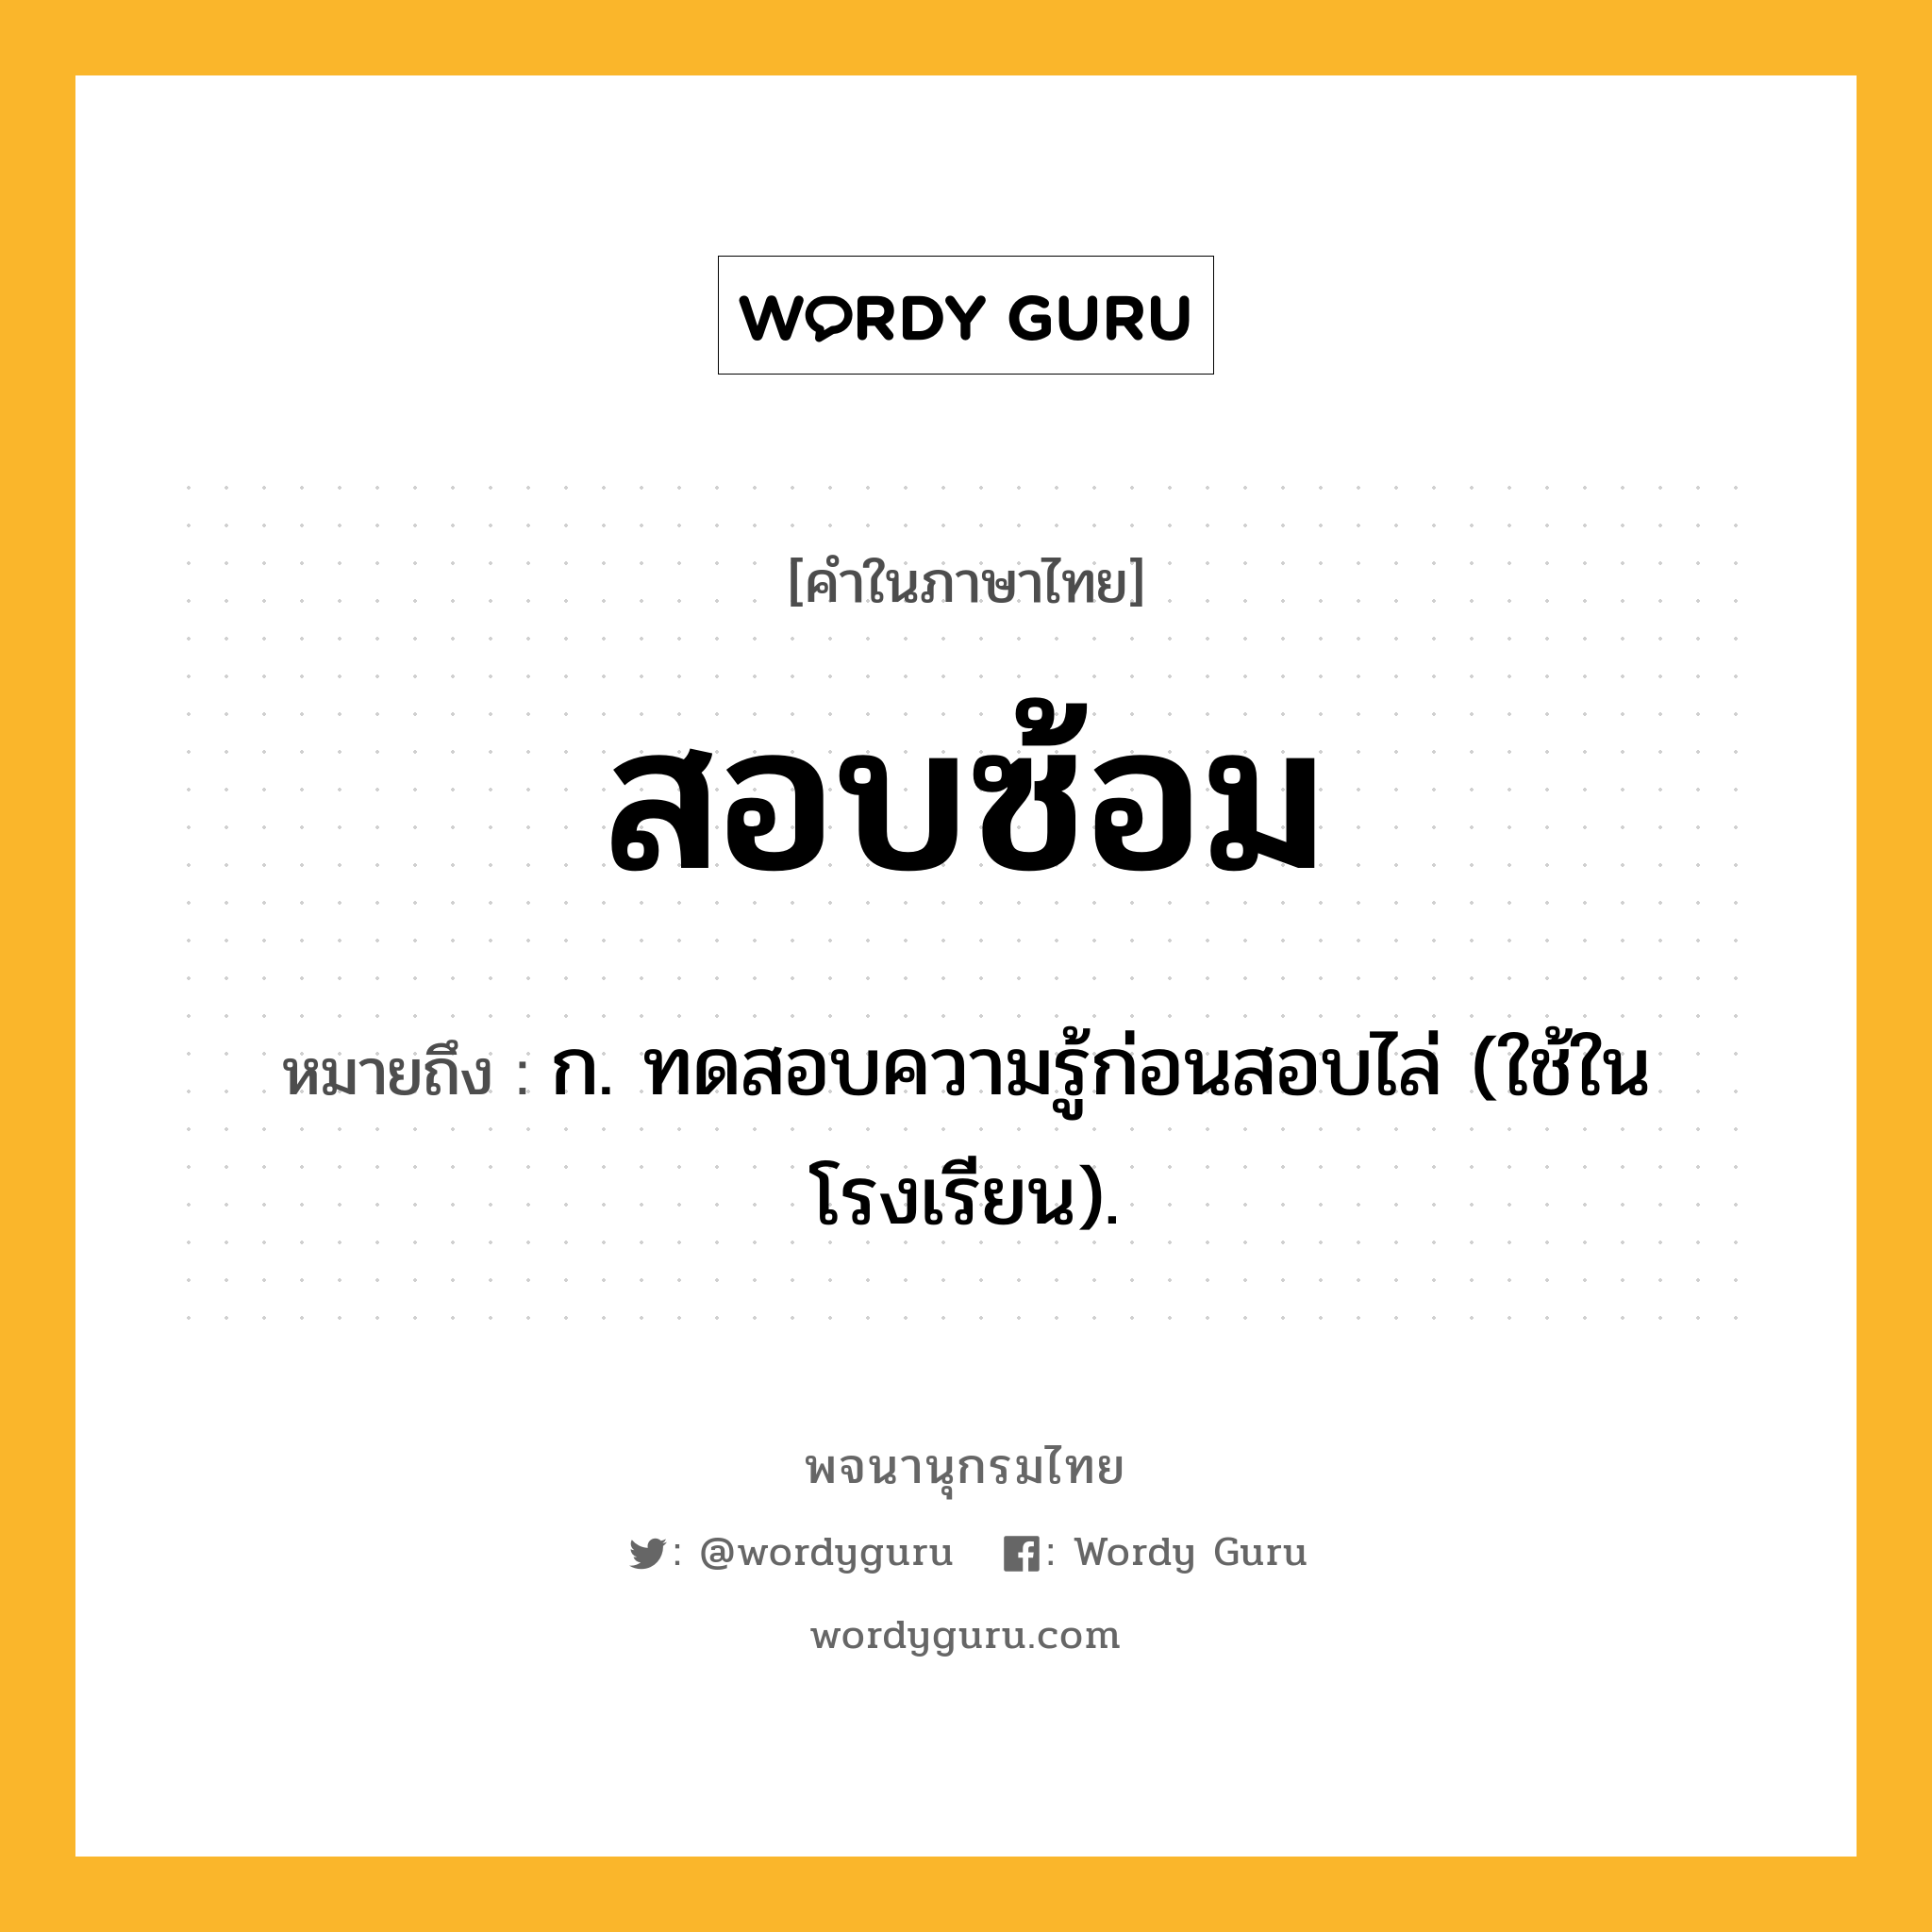 สอบซ้อม หมายถึงอะไร?, คำในภาษาไทย สอบซ้อม หมายถึง ก. ทดสอบความรู้ก่อนสอบไล่ (ใช้ในโรงเรียน).